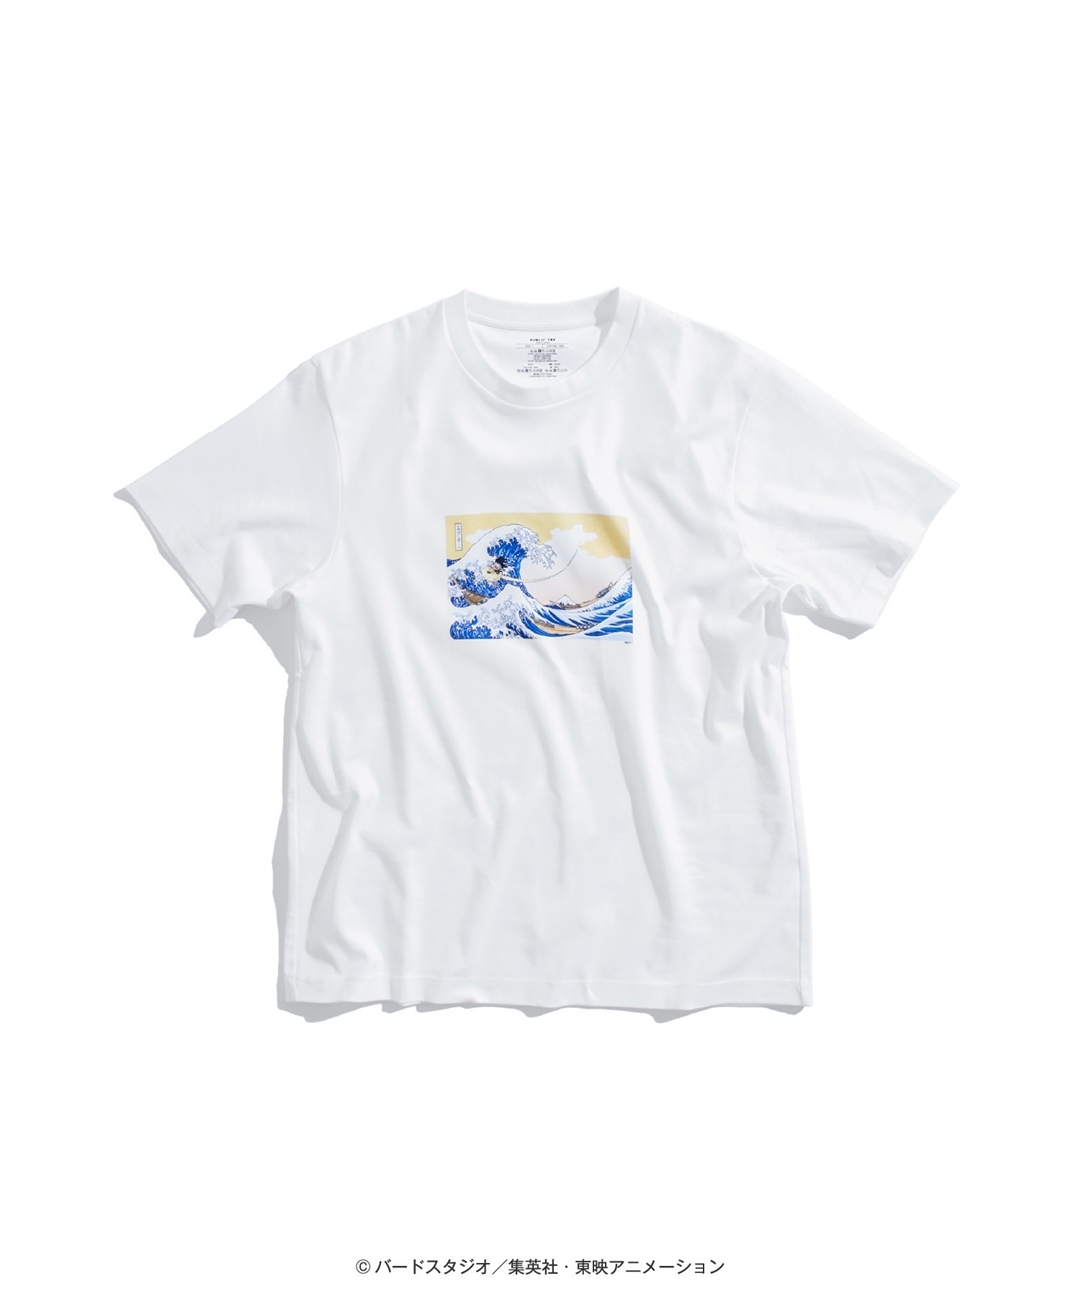 「ドラゴンボール」から名画にオマージュを捧げた書き下ろしデザインのTシャツがPUBLIC TOKYOにて6/10 発売 (DRAGON BALL)